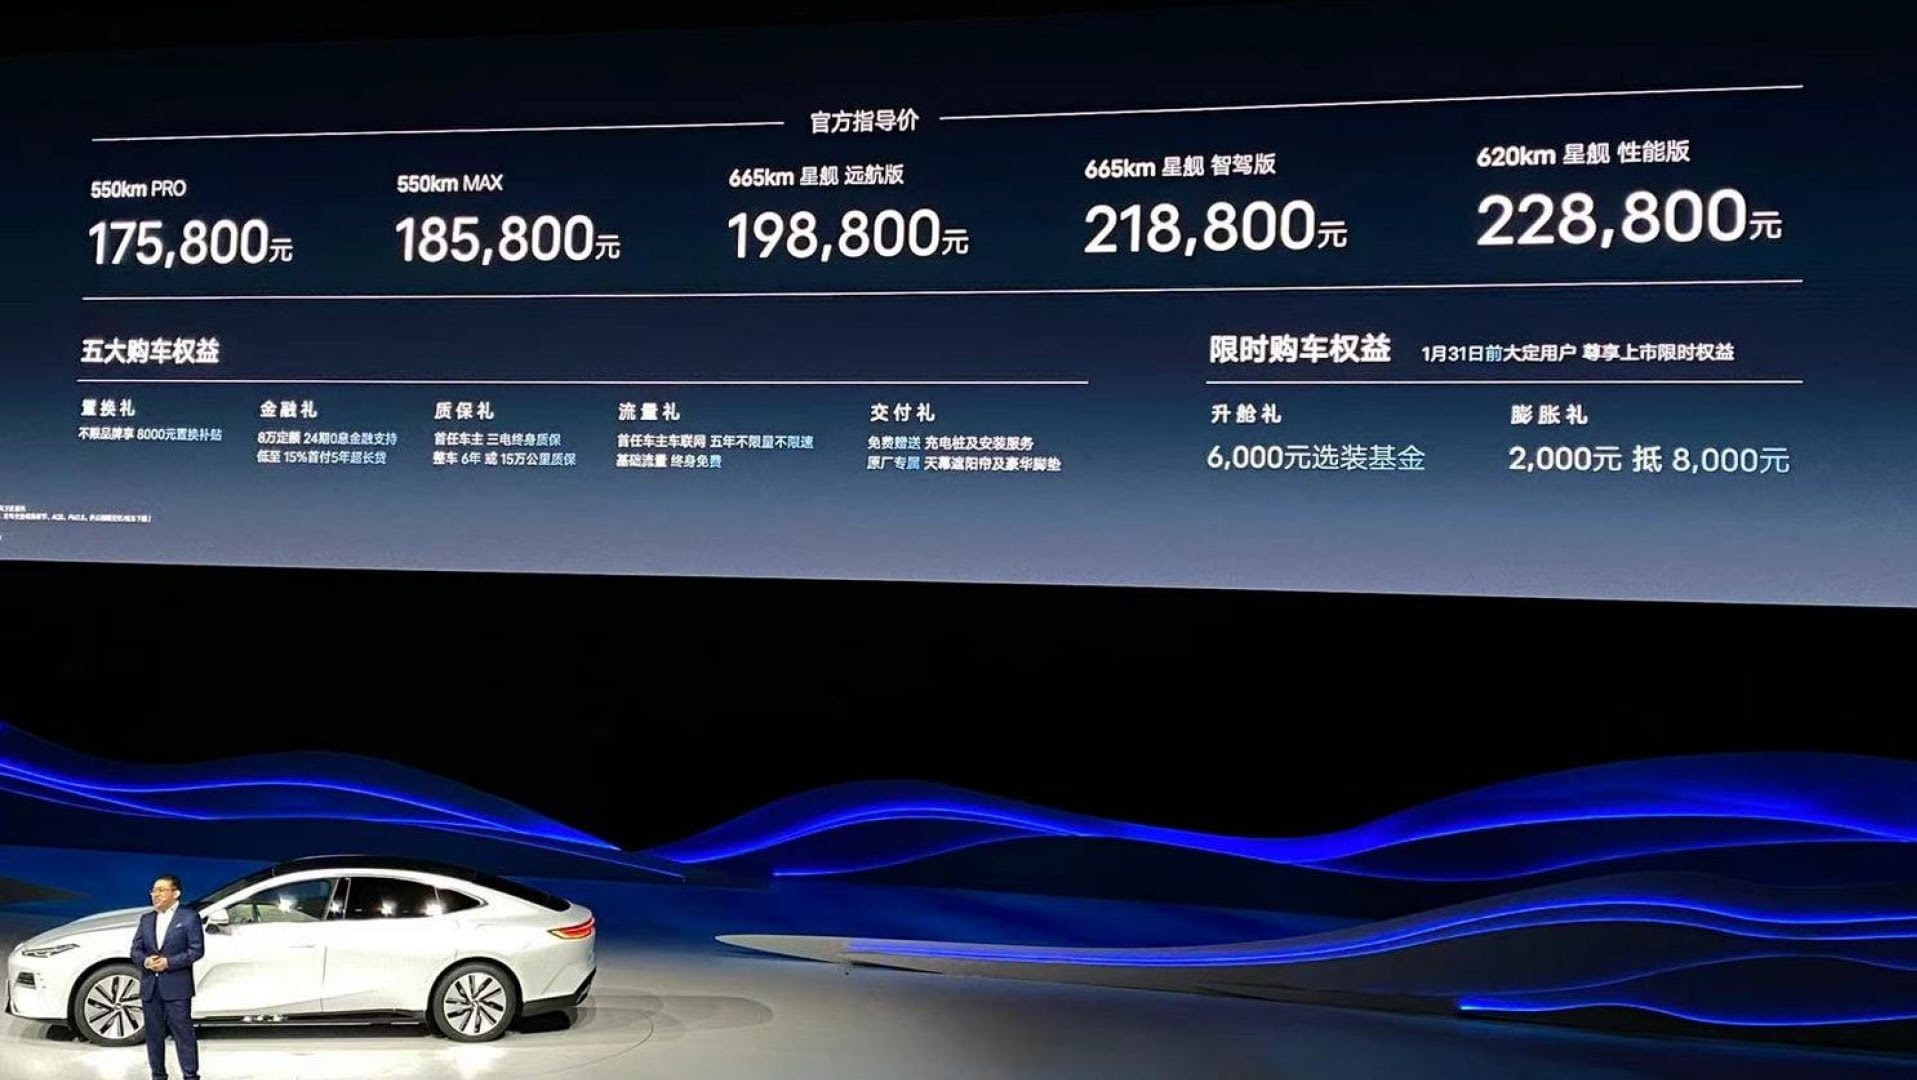 Thương hiệu vừa vào Việt Nam giới thiệu 'bom tấn' sedan điện nhìn là mê: có thông số vượt trội hơn Mercedes-Benz EQS, giá chỉ từ 600 triệu đồng - Ảnh 4.